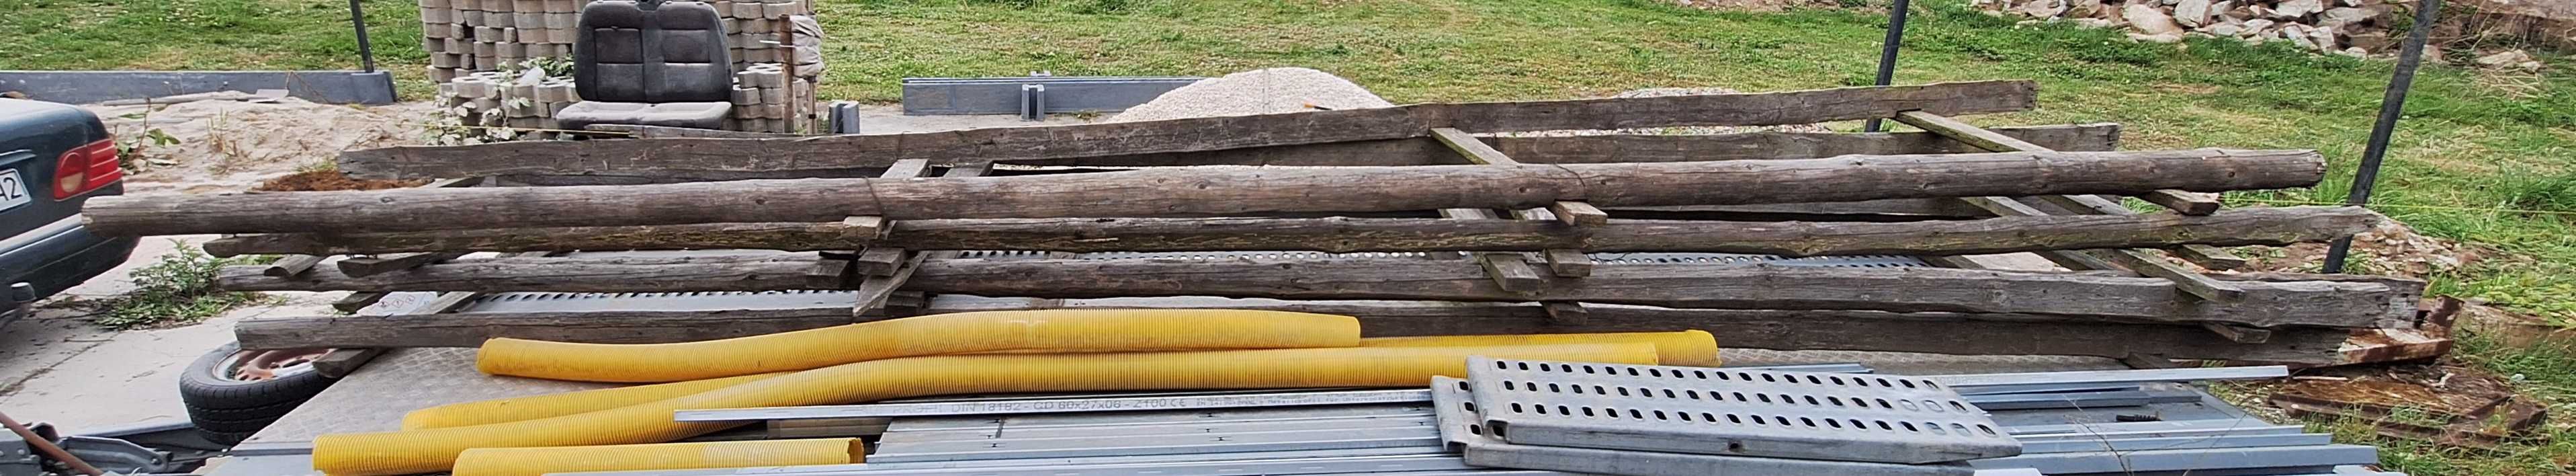 Rusztowanie budowlane elewacyjne drewniane 6m belki słupy stopy